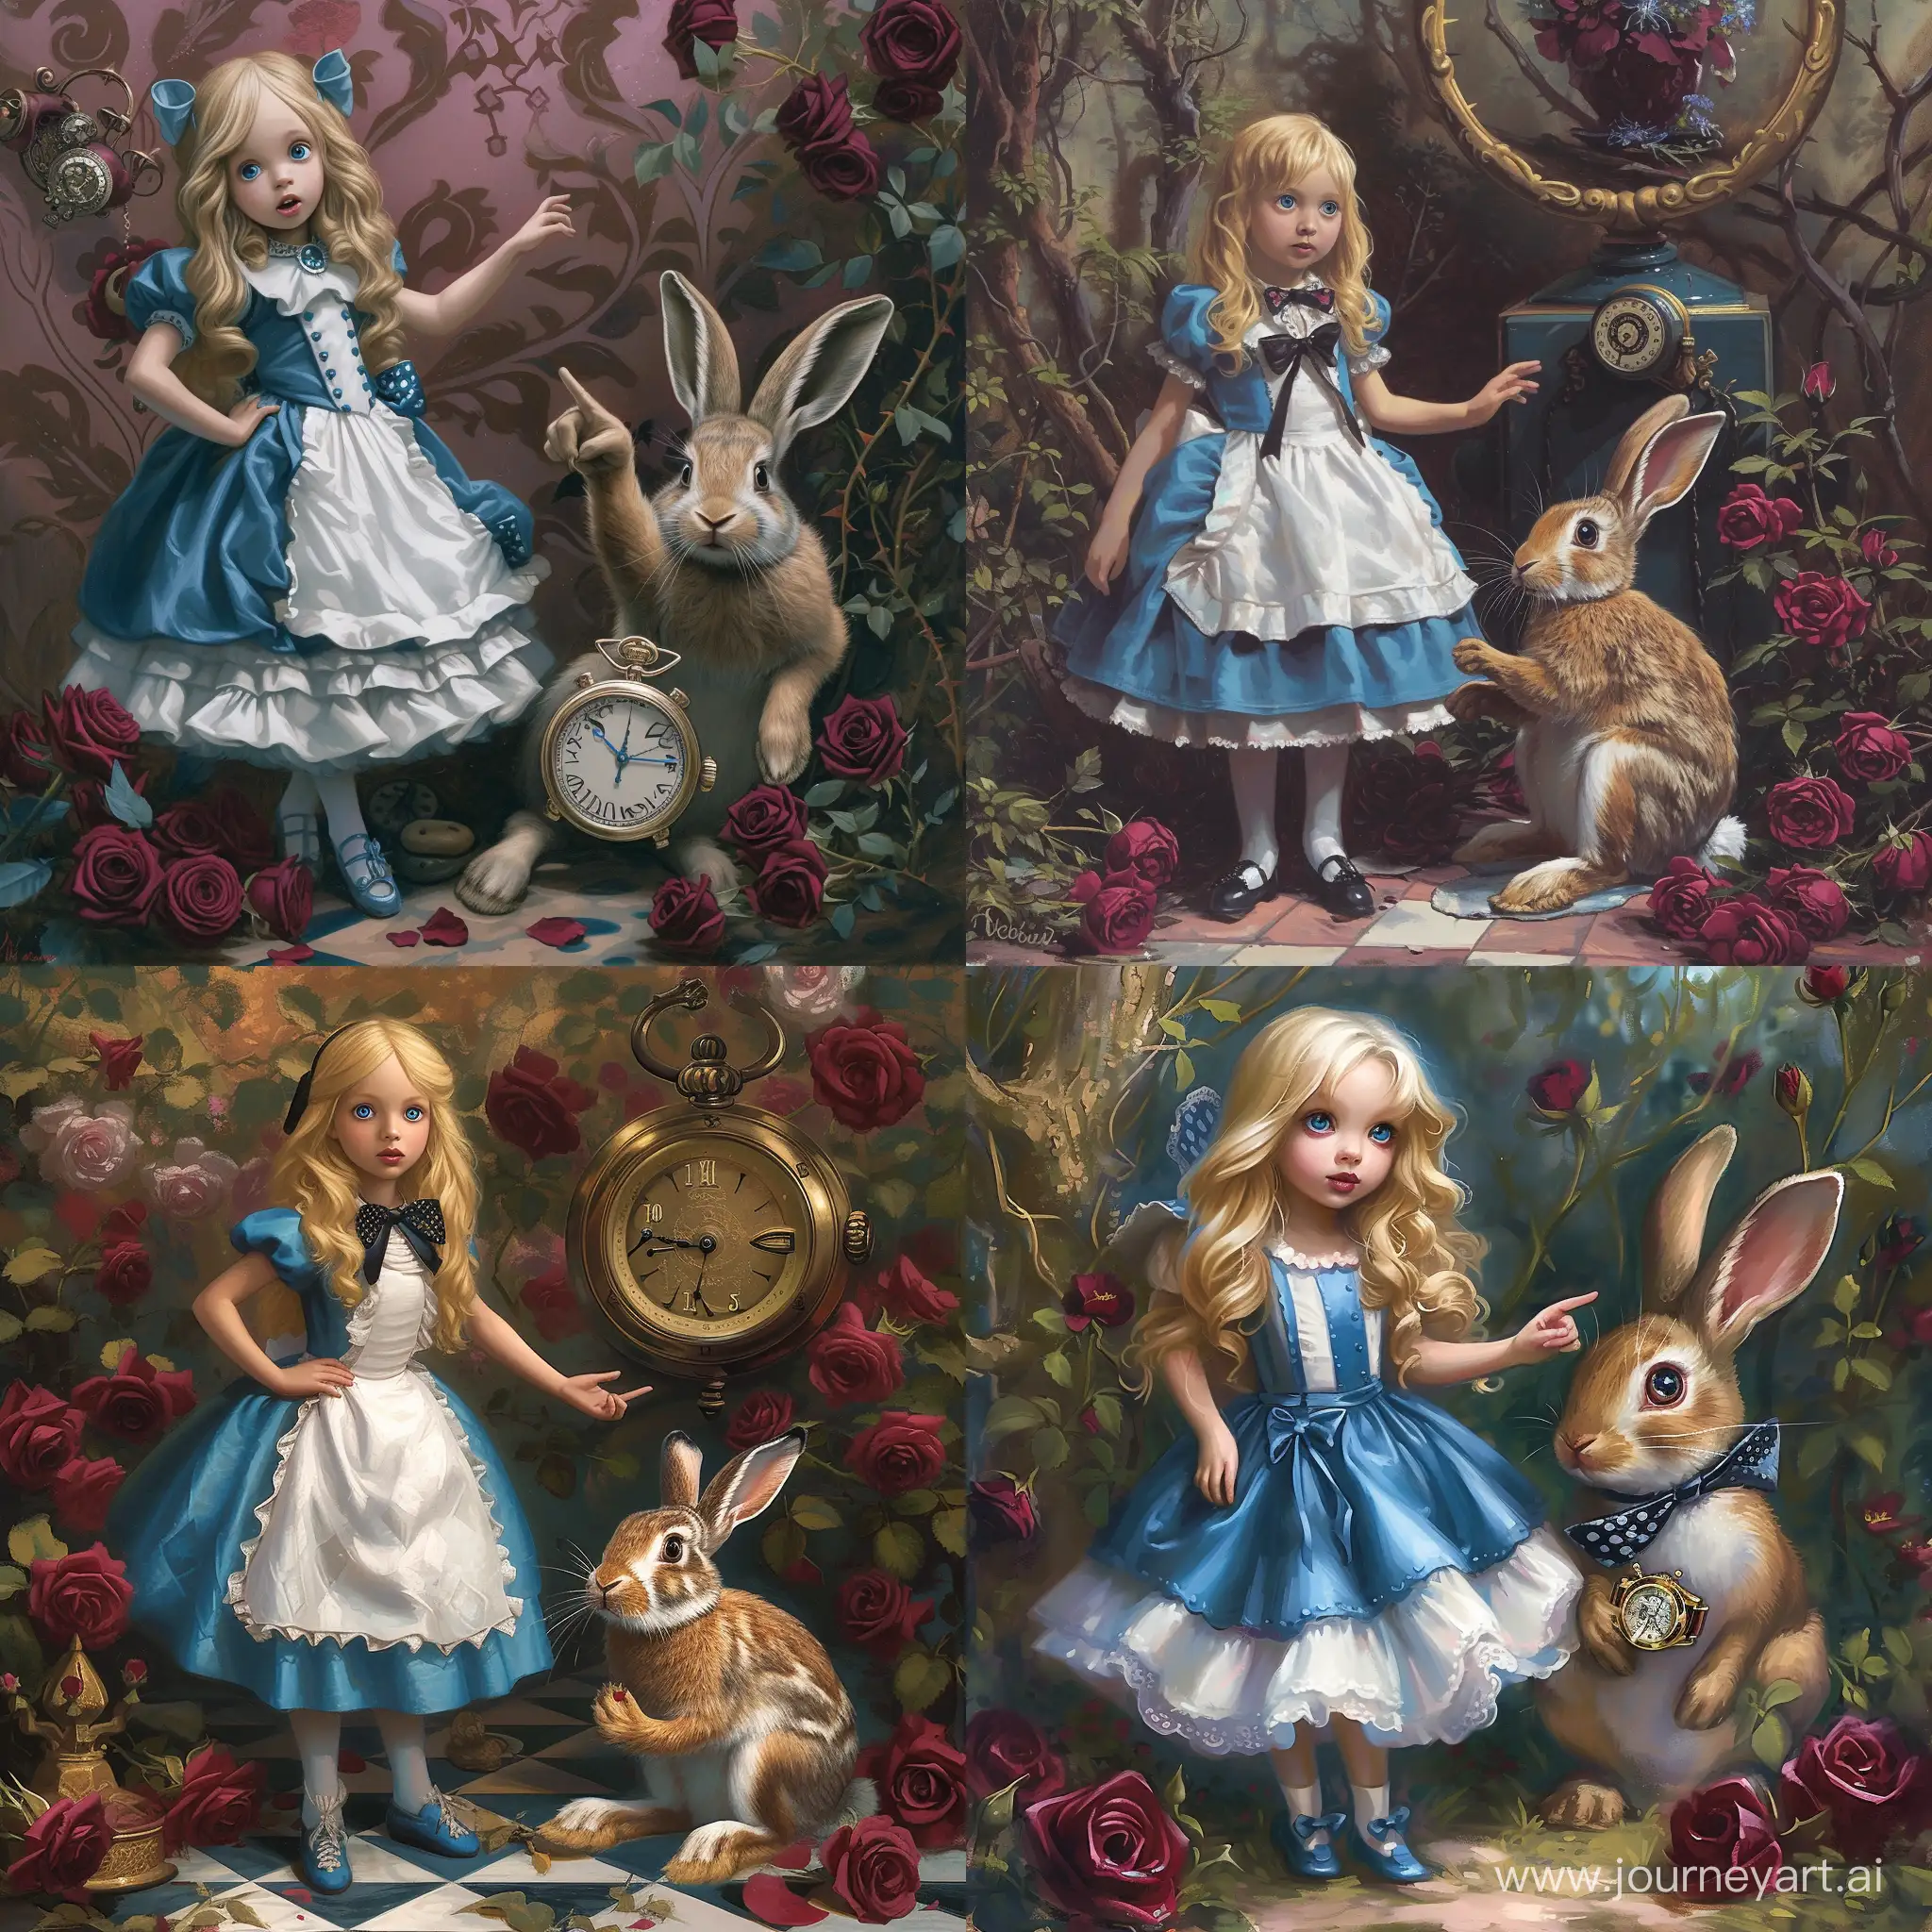 Милая девочка Алиса из сказки про Алису в стране чудес, Алиса с блонд волосами, голубые глаза, стоит в сине-белом платье рядом с кроликом, кролик сидит и показывает на часы, рядом бордовые розы